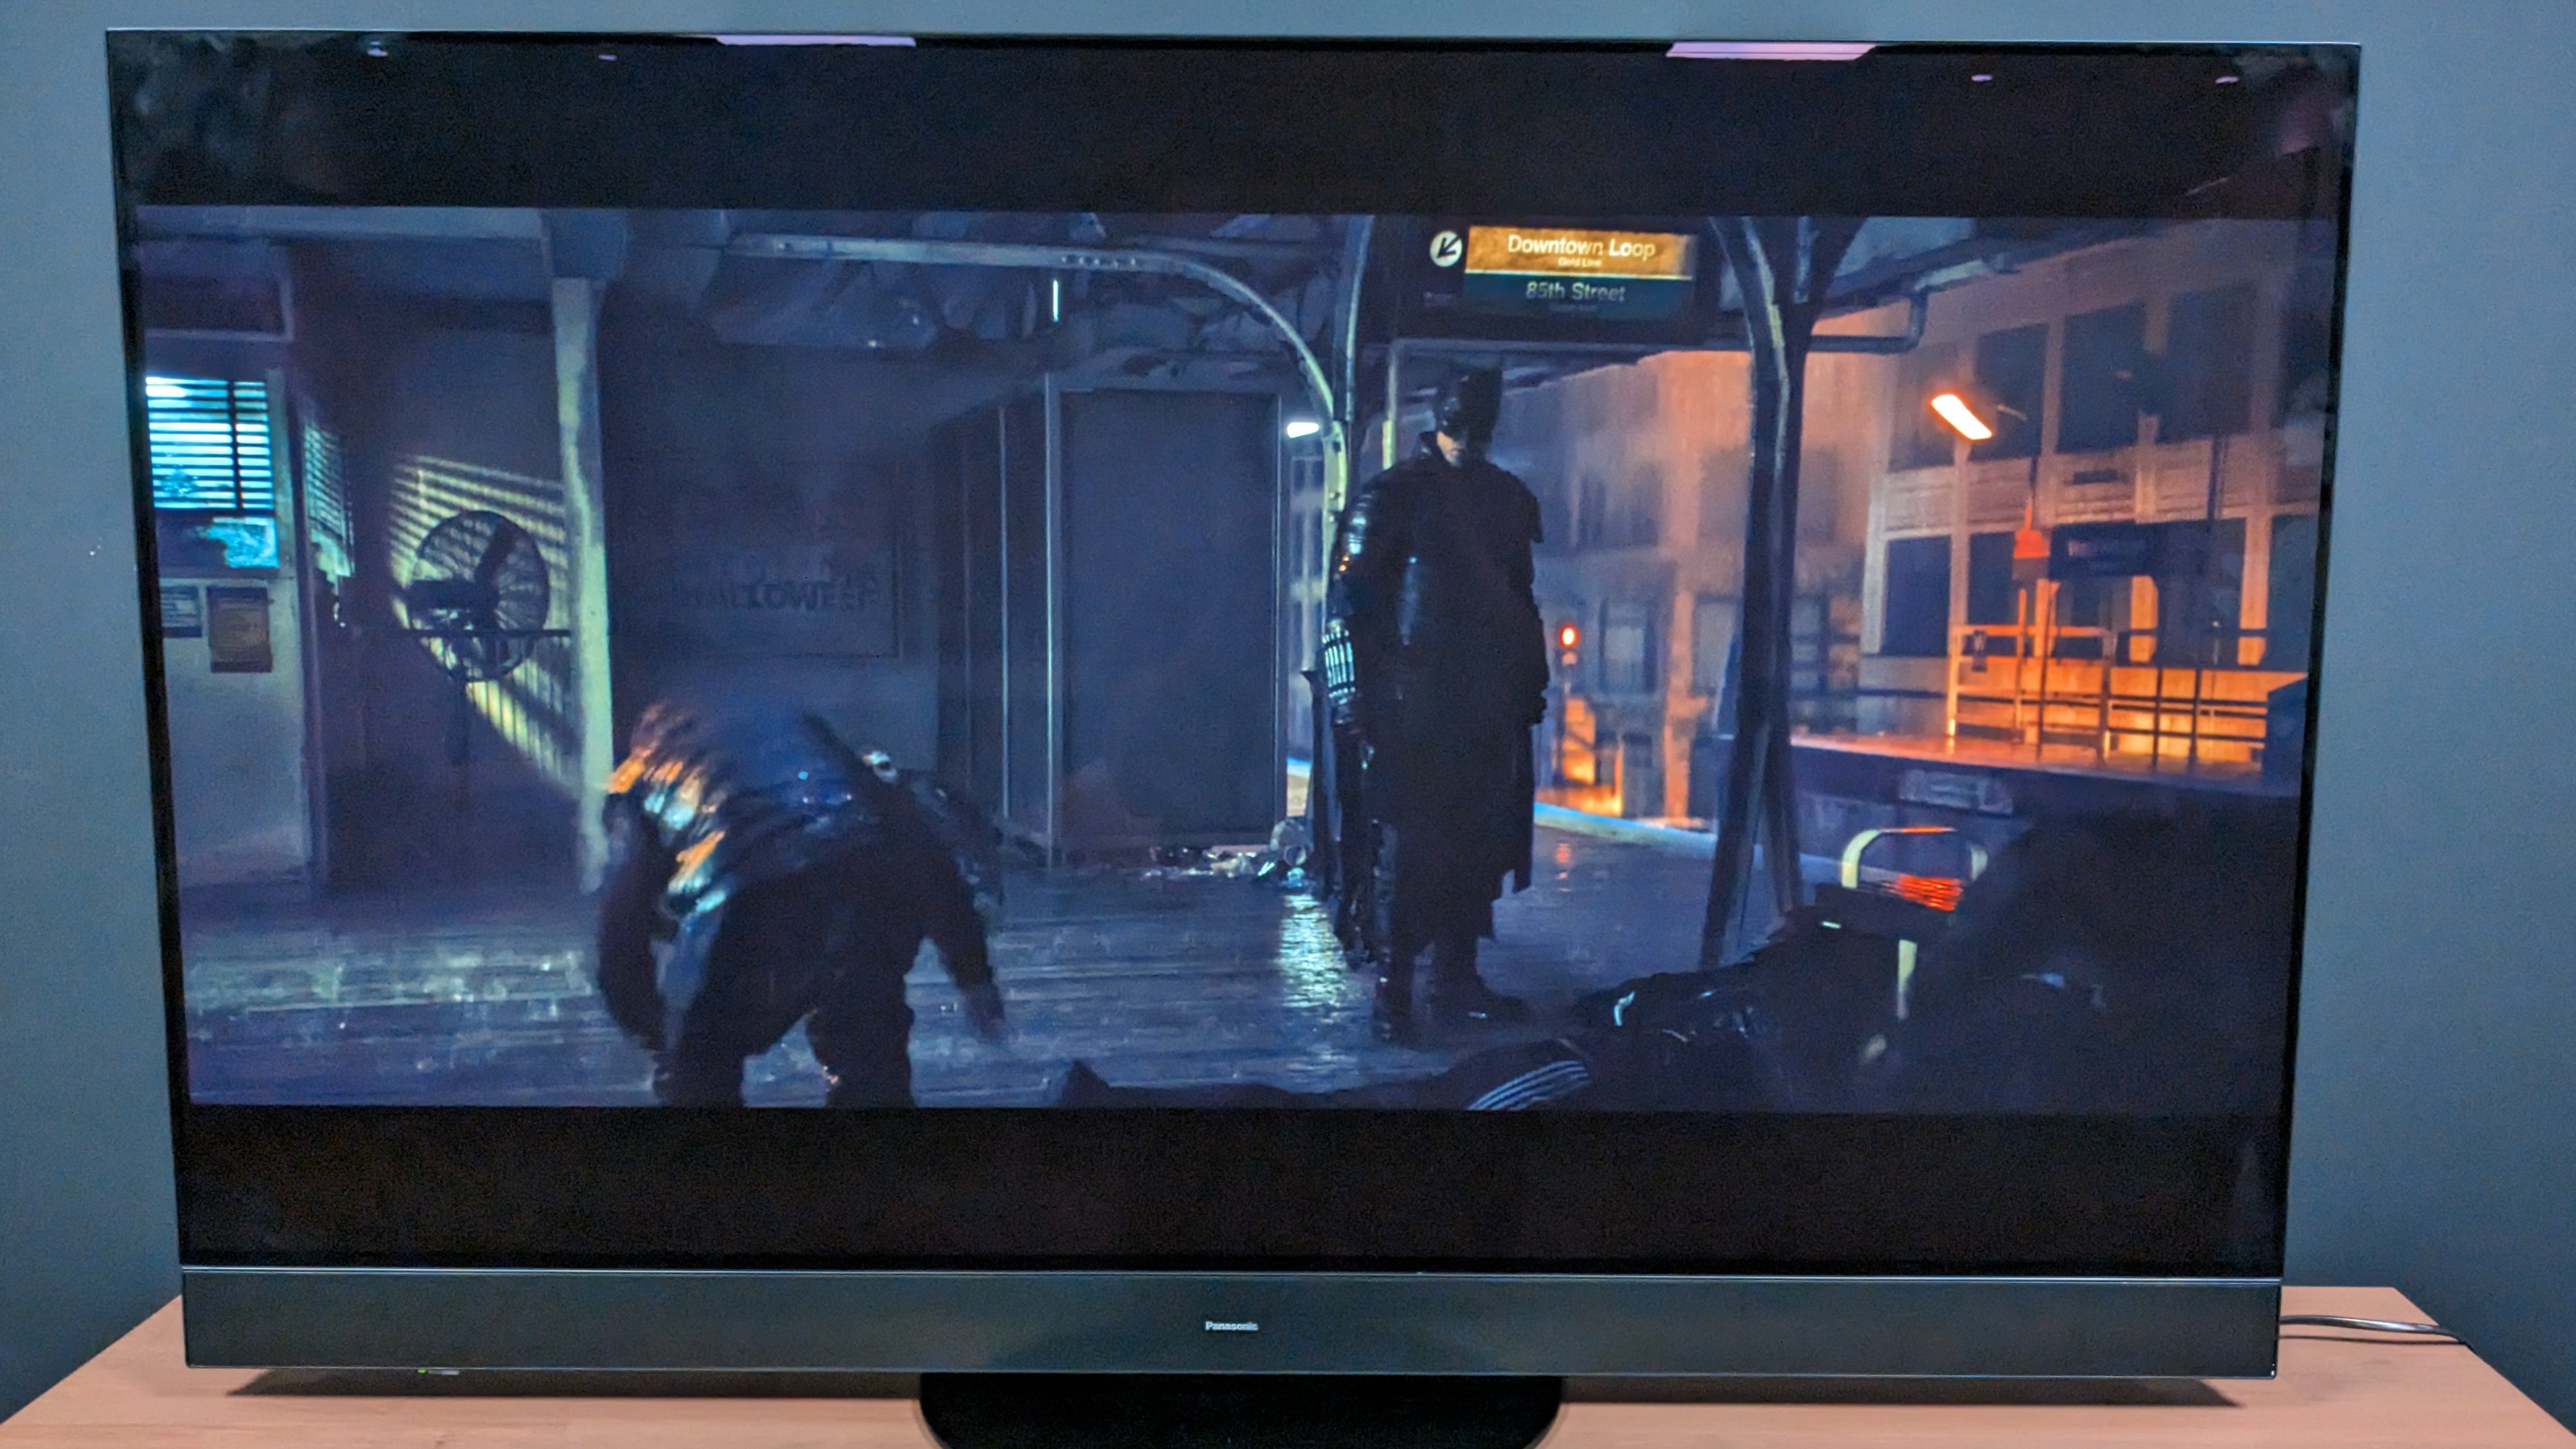 Panasonic MZ2000 showing The Batman on screen